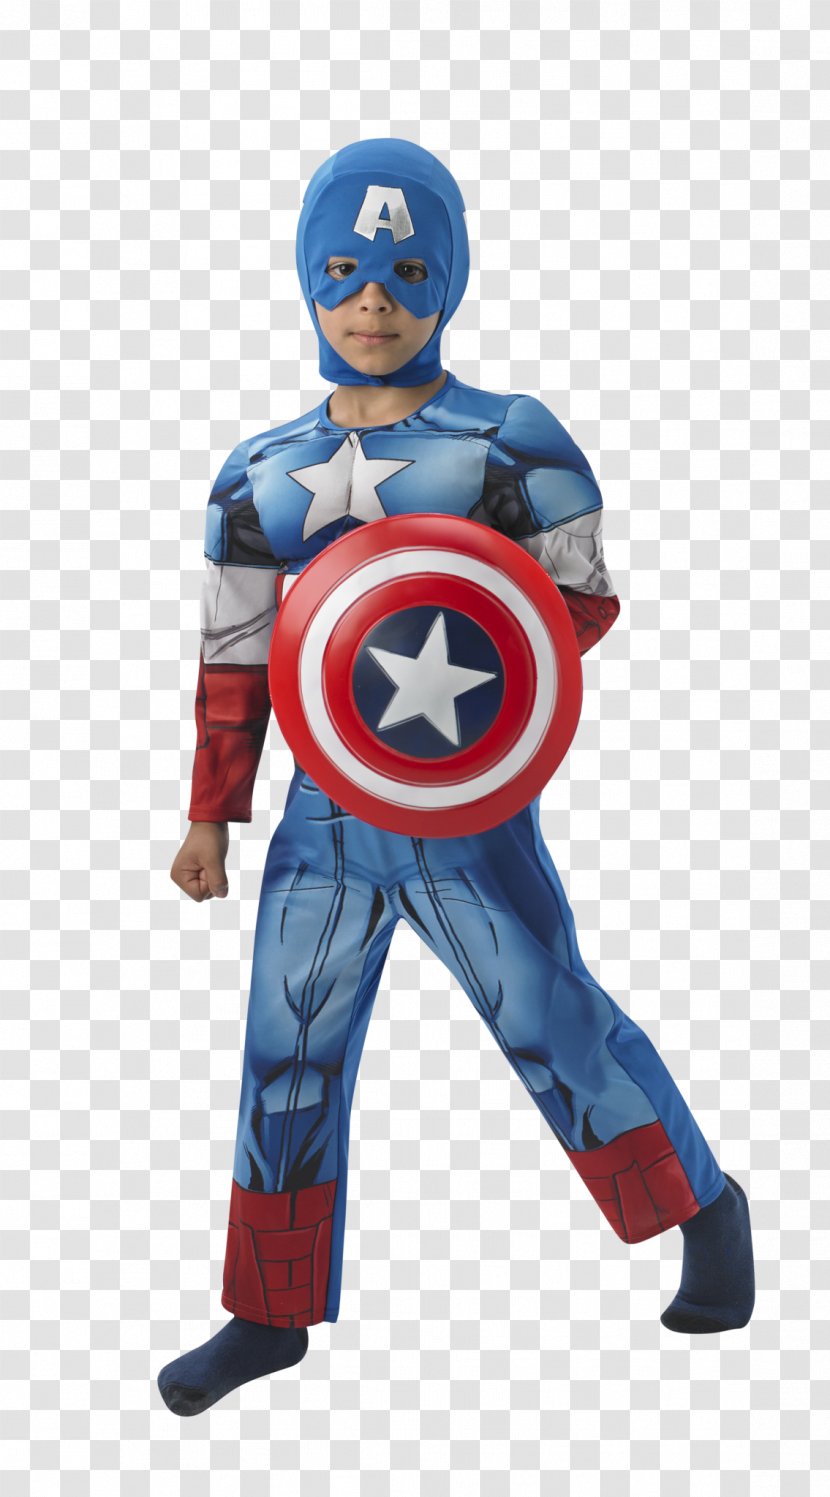 Captain America Marvel Avengers Assemble Superhero Costume Party - Civil War Transparent PNG